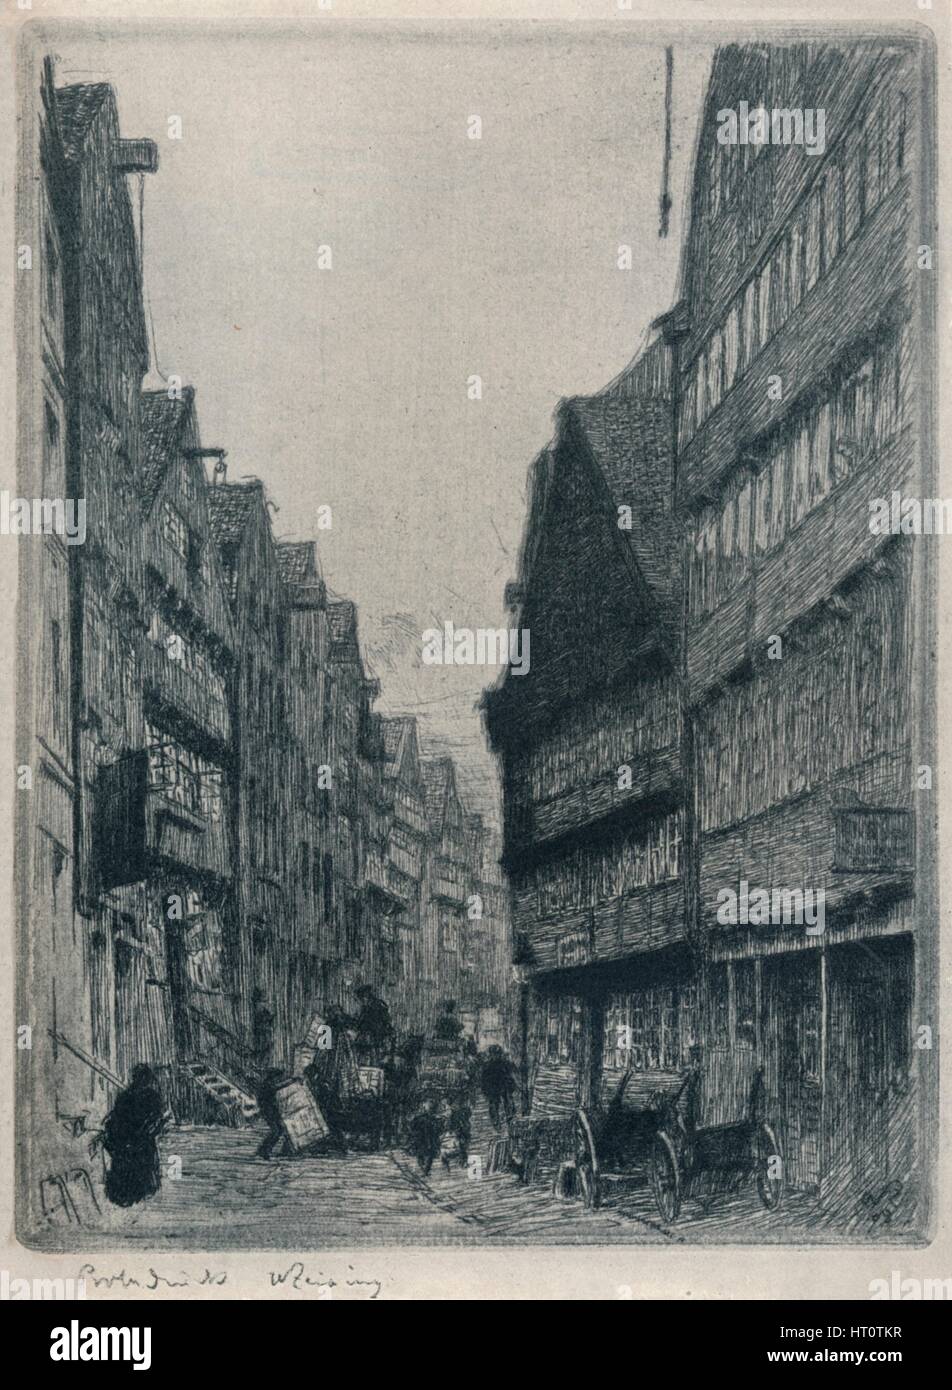 'Herrlichkeit, Hamburg', c1913. Artist: Walter Zeising. Stock Photo